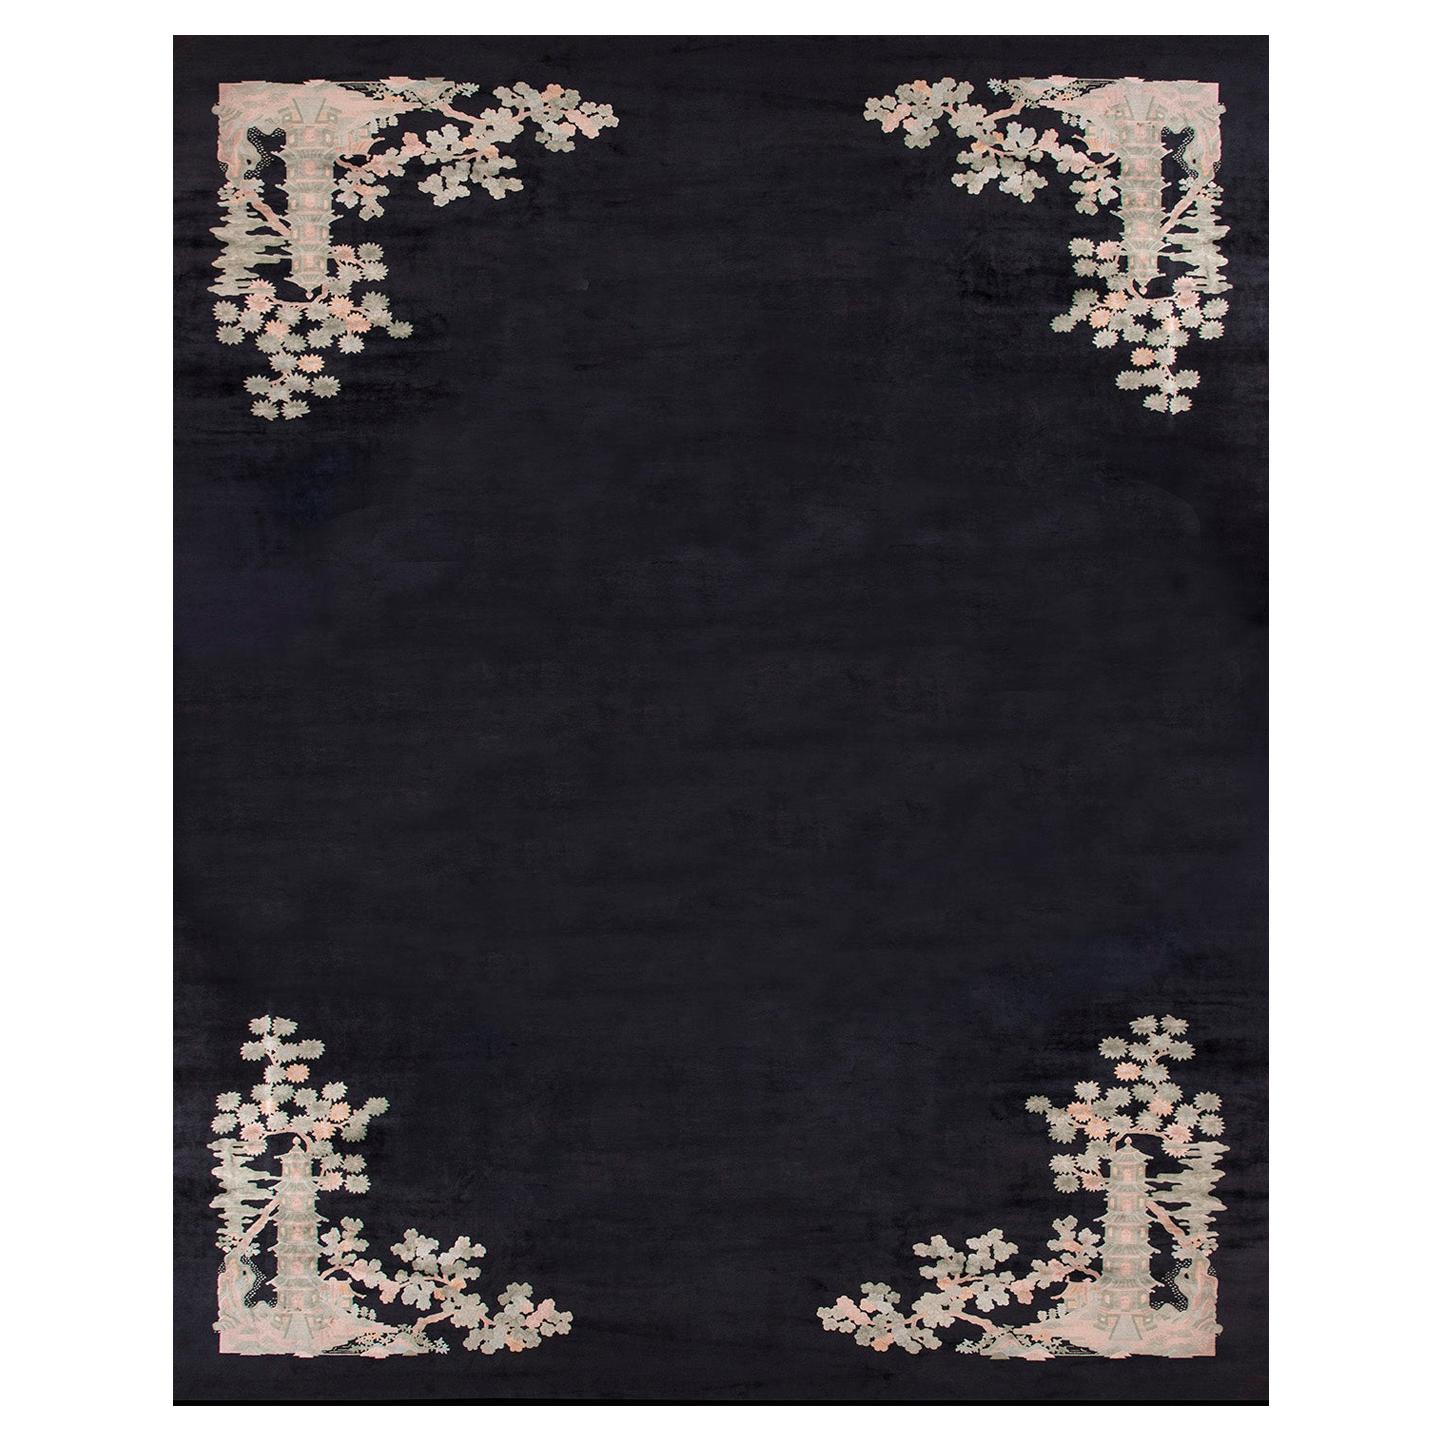 1920s Chinese Art Deco Carpet by Fette - Li Workshop (17'3" x 23'3" - 526 x 709) For Sale